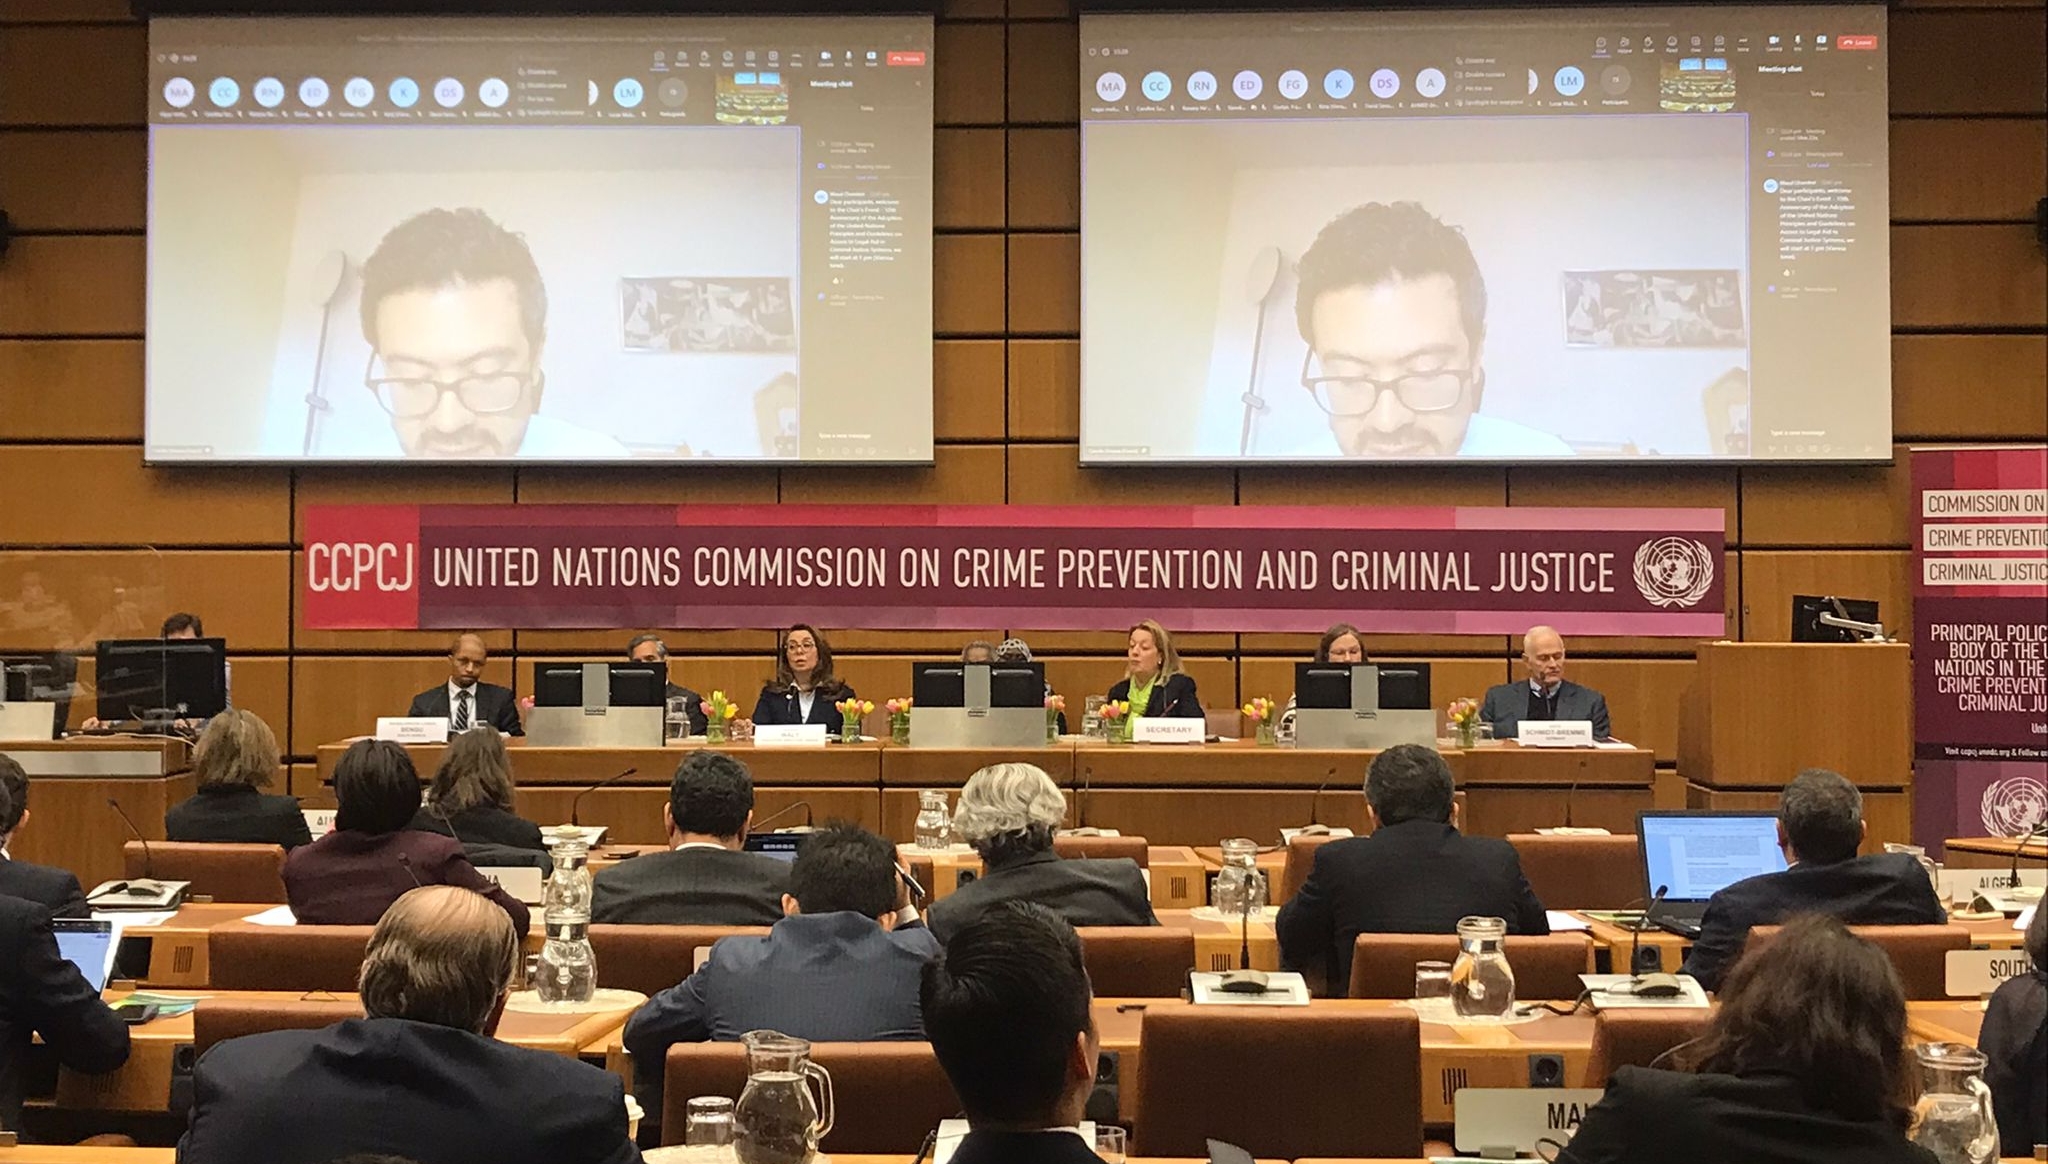 Colombia participó en el evento de conmemoración de los Principios y directrices sobre el acceso a la asistencia jurídica en los sistemas de justicia penal, la Comisión de Prevención del Delito y Justicia Penal